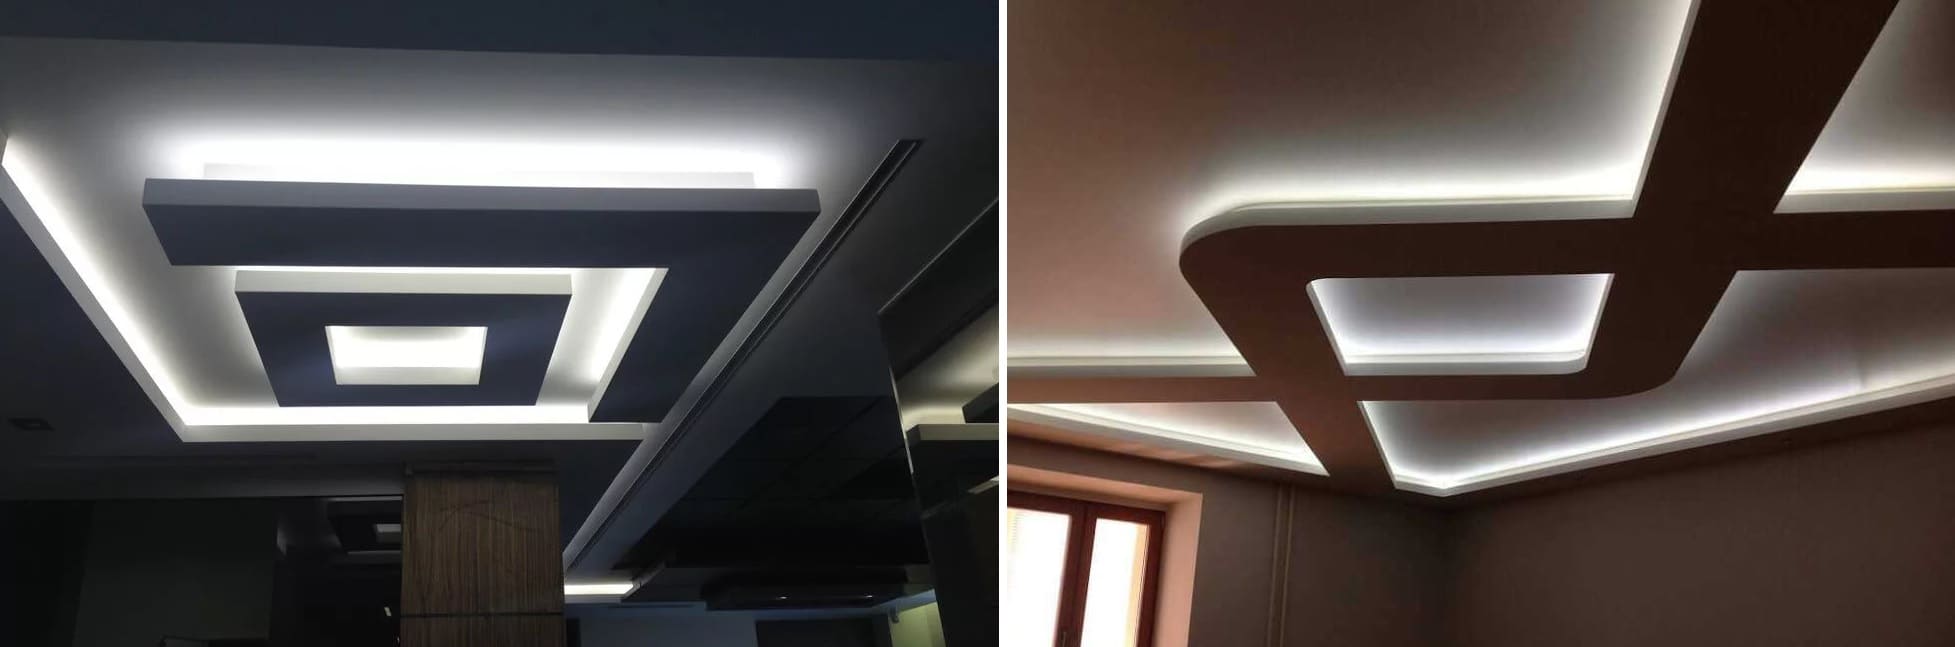 Заказать двухуровневые потолки с подсветкой - уникальный дизайн и богатый выбор освещения от компании Alezi